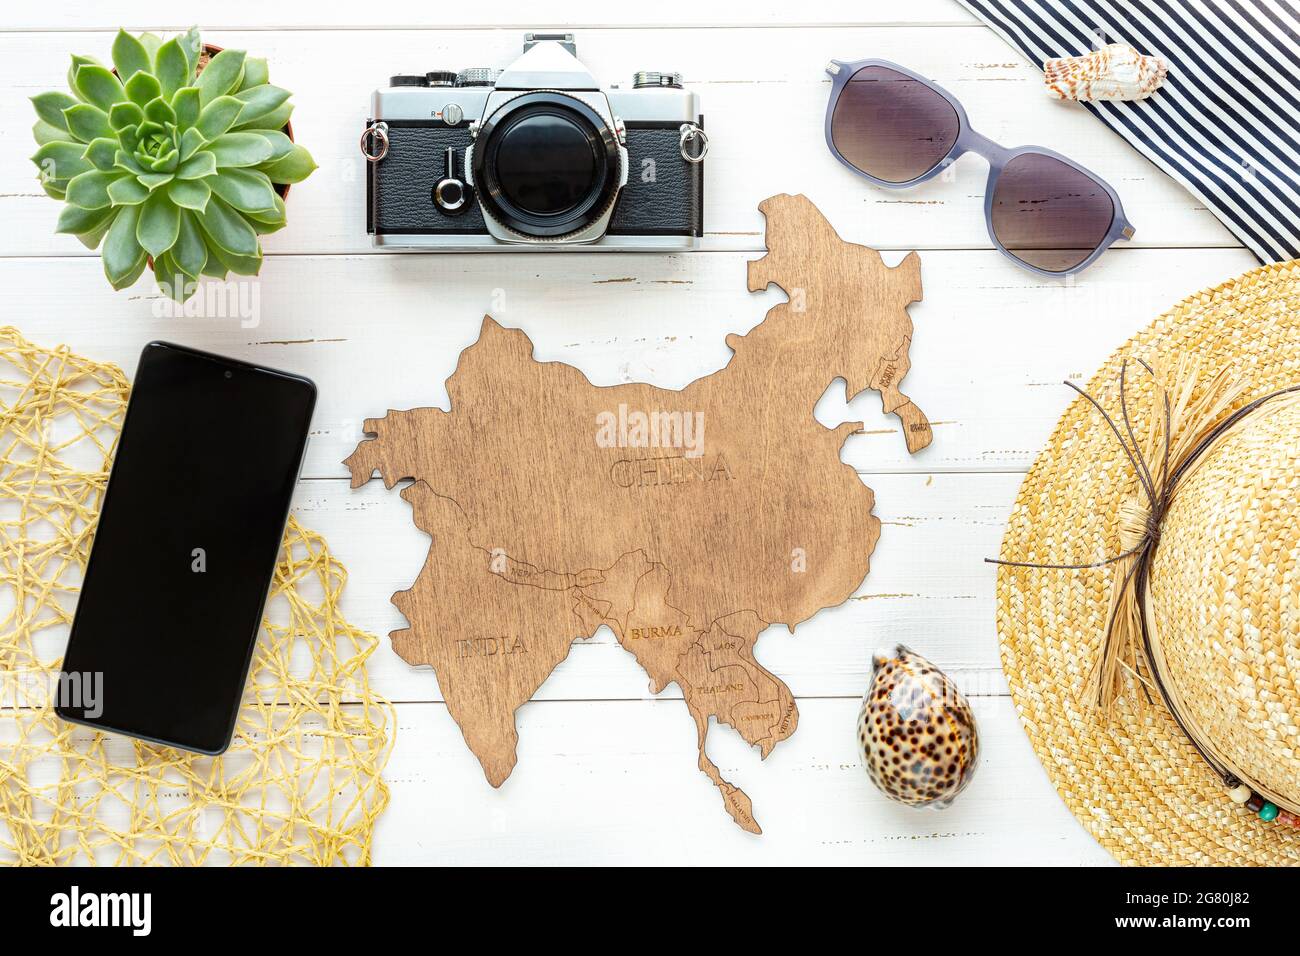 Destinazioni turistiche per i paesi tropicali asiatici. Su sfondo bianco mappa di legno con paesi - Cina, India, Corea, Vietnam, Cambogia, e altri Foto Stock